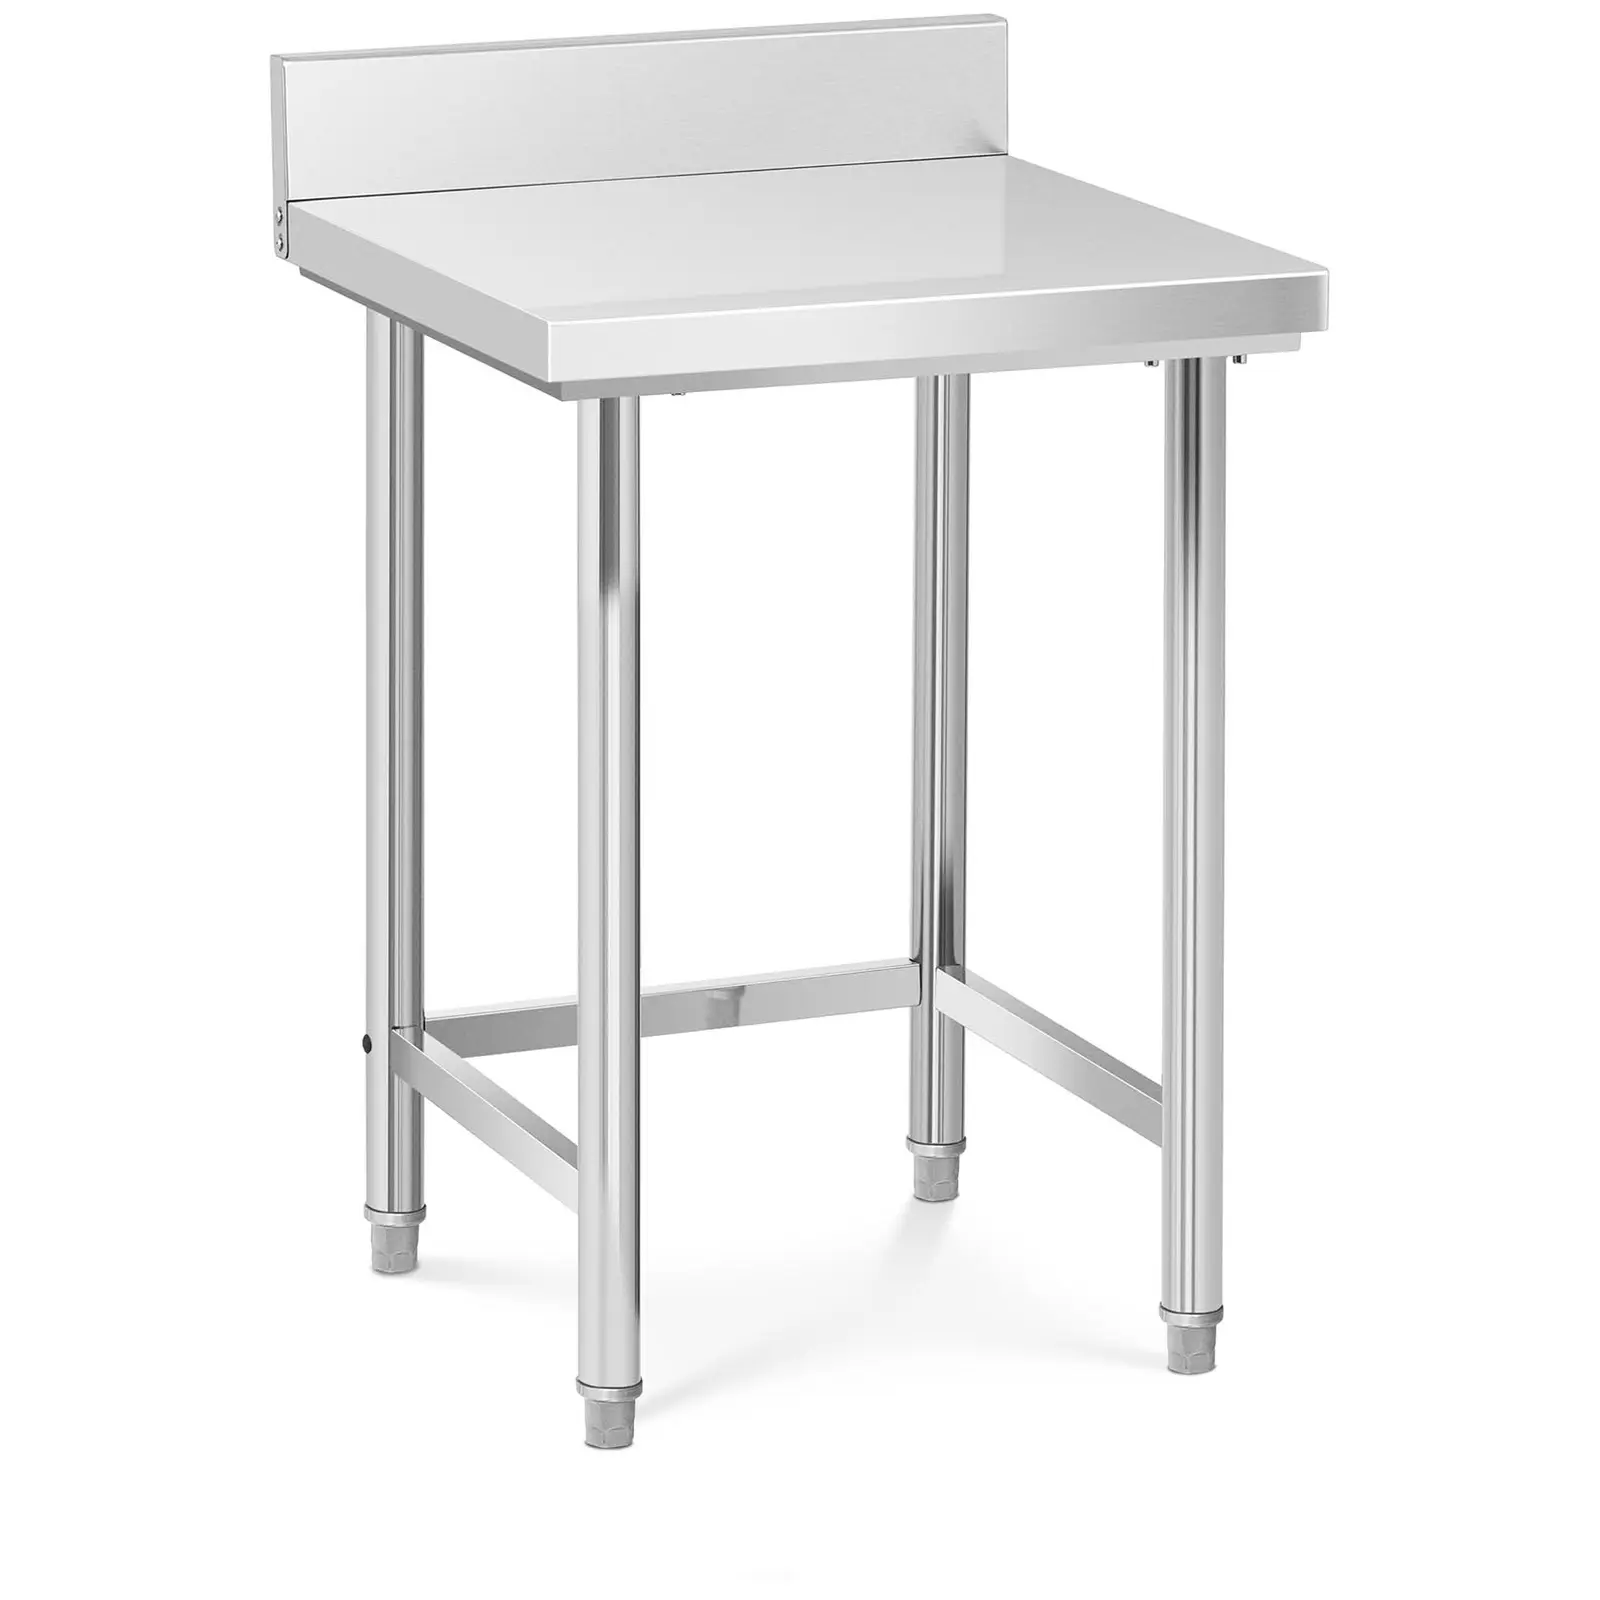 Pracovný stôl z nehrdzavejúcej ocele - 64 x 64 cm - stojan - nosnosť 200 kg